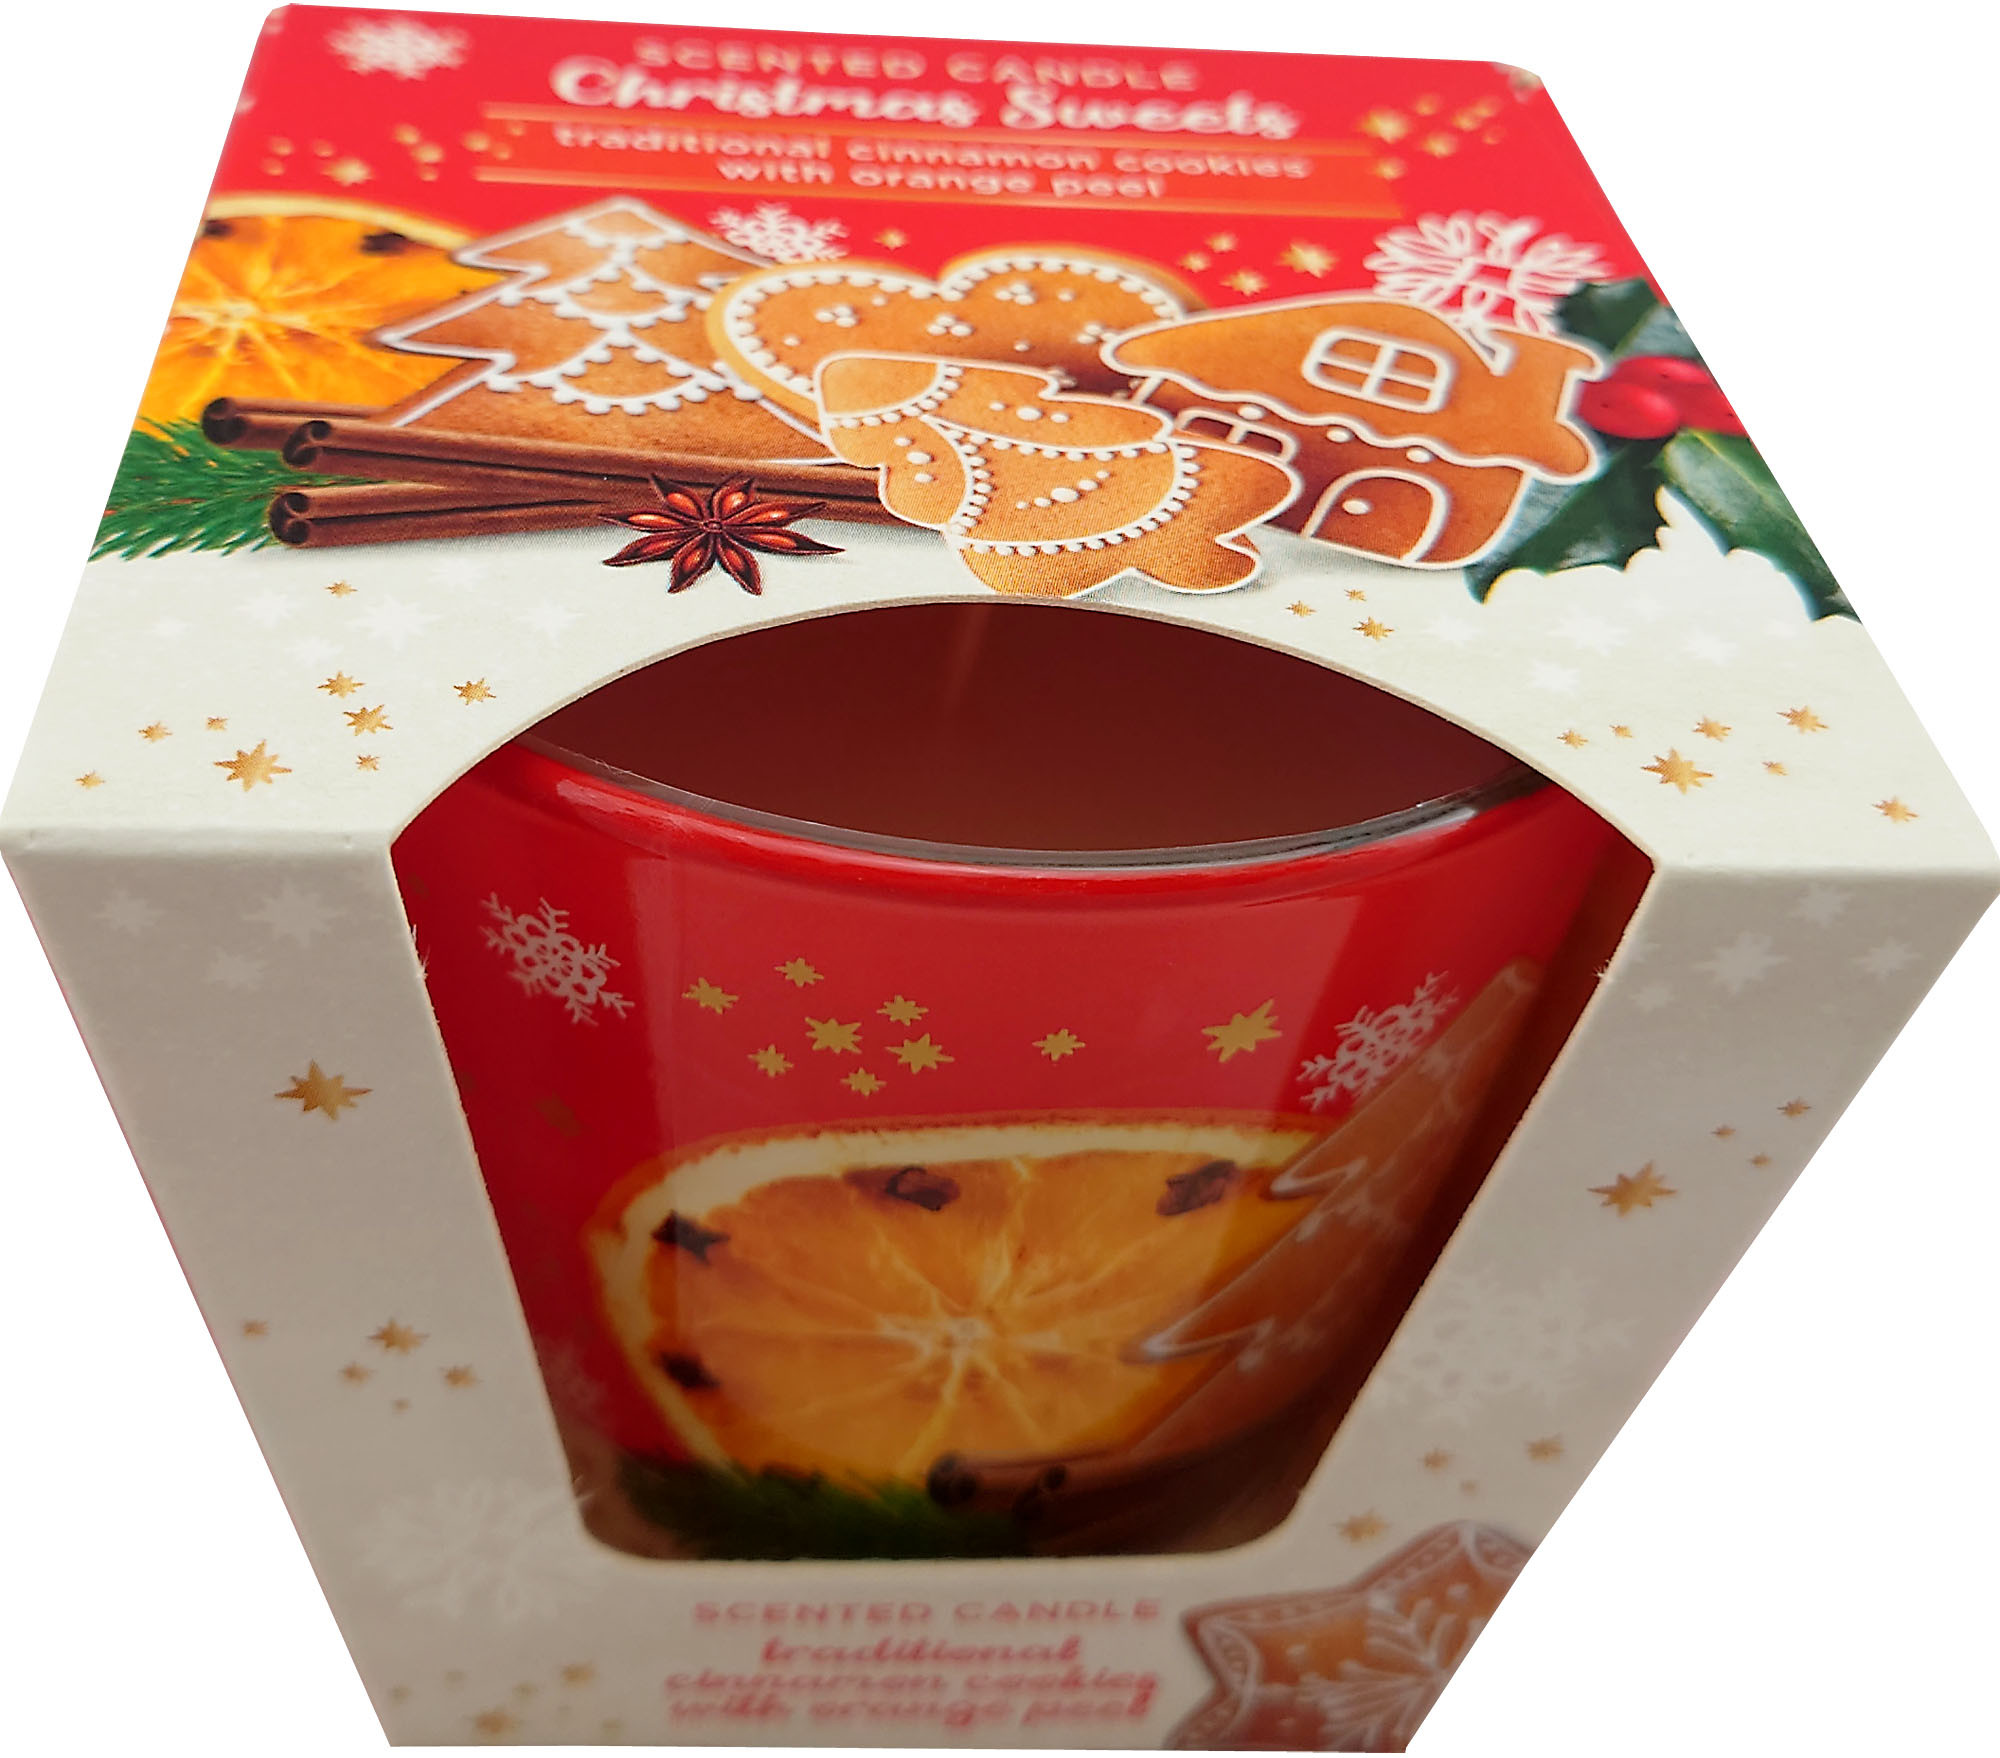 KNOX Duftkerze im Glas, Christmas Sweets - traditional cinnamon cookies with orange peel